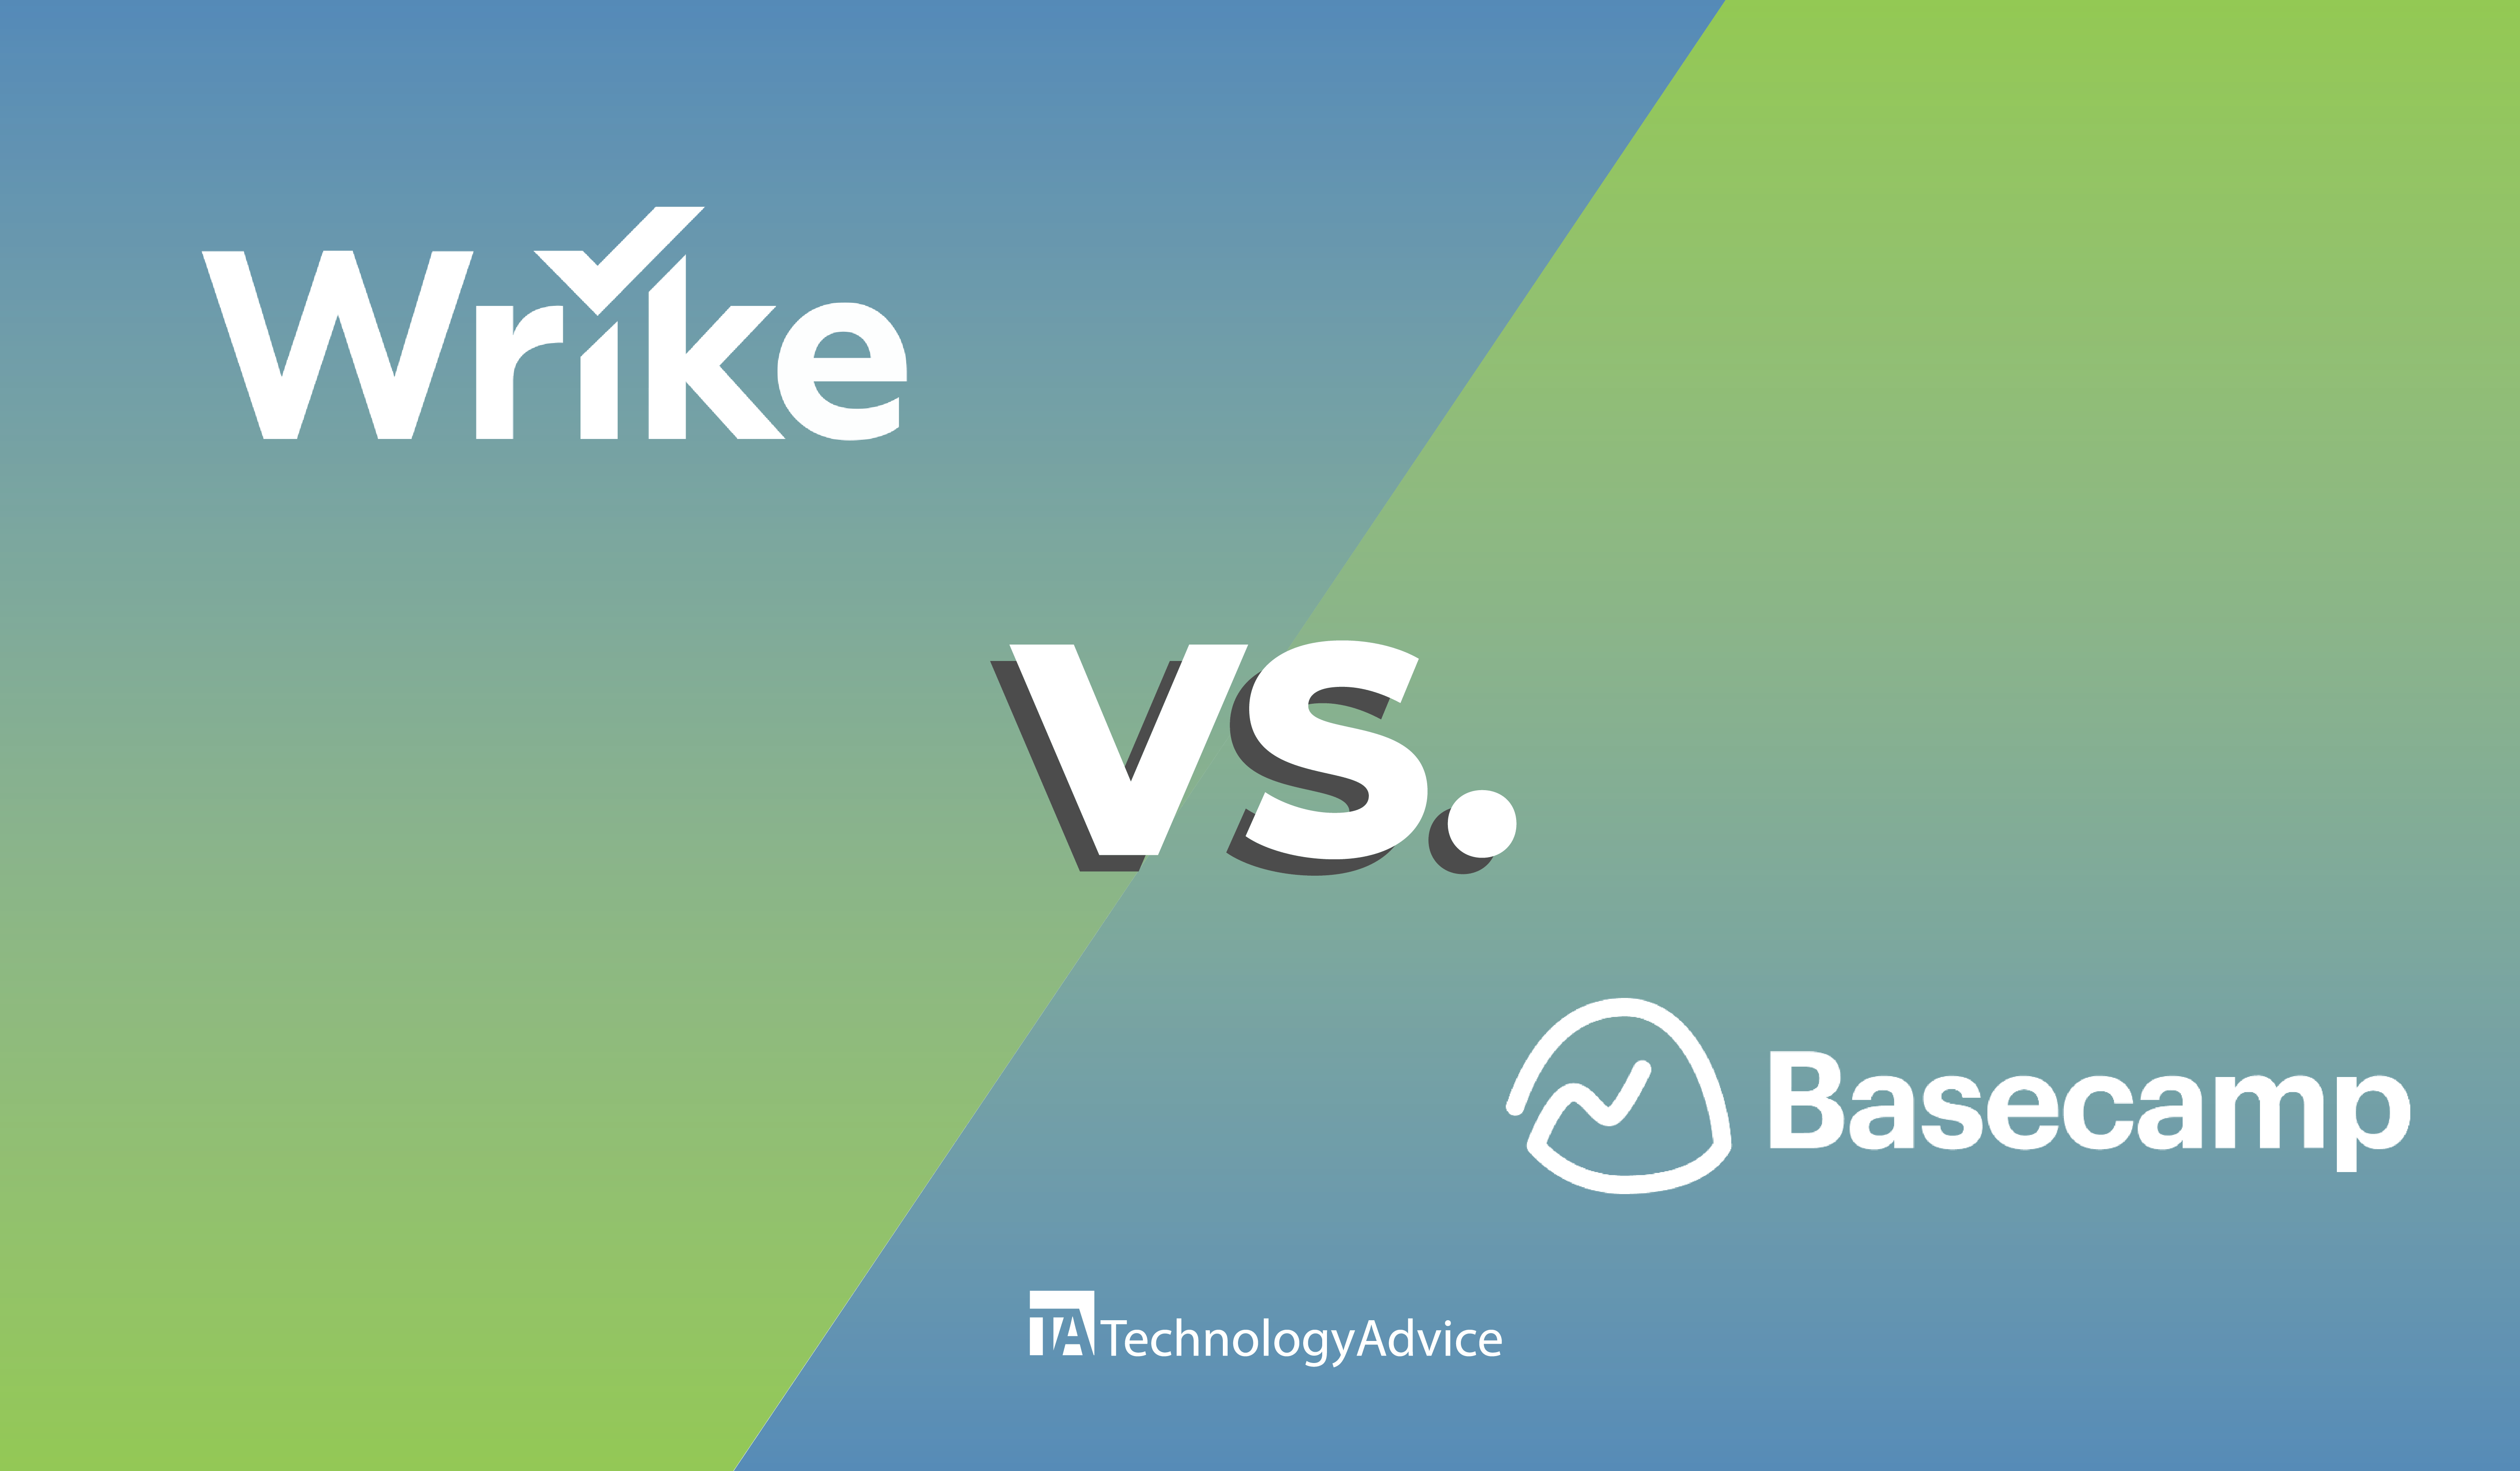 Wrike vs Basecamp with each company's logo.